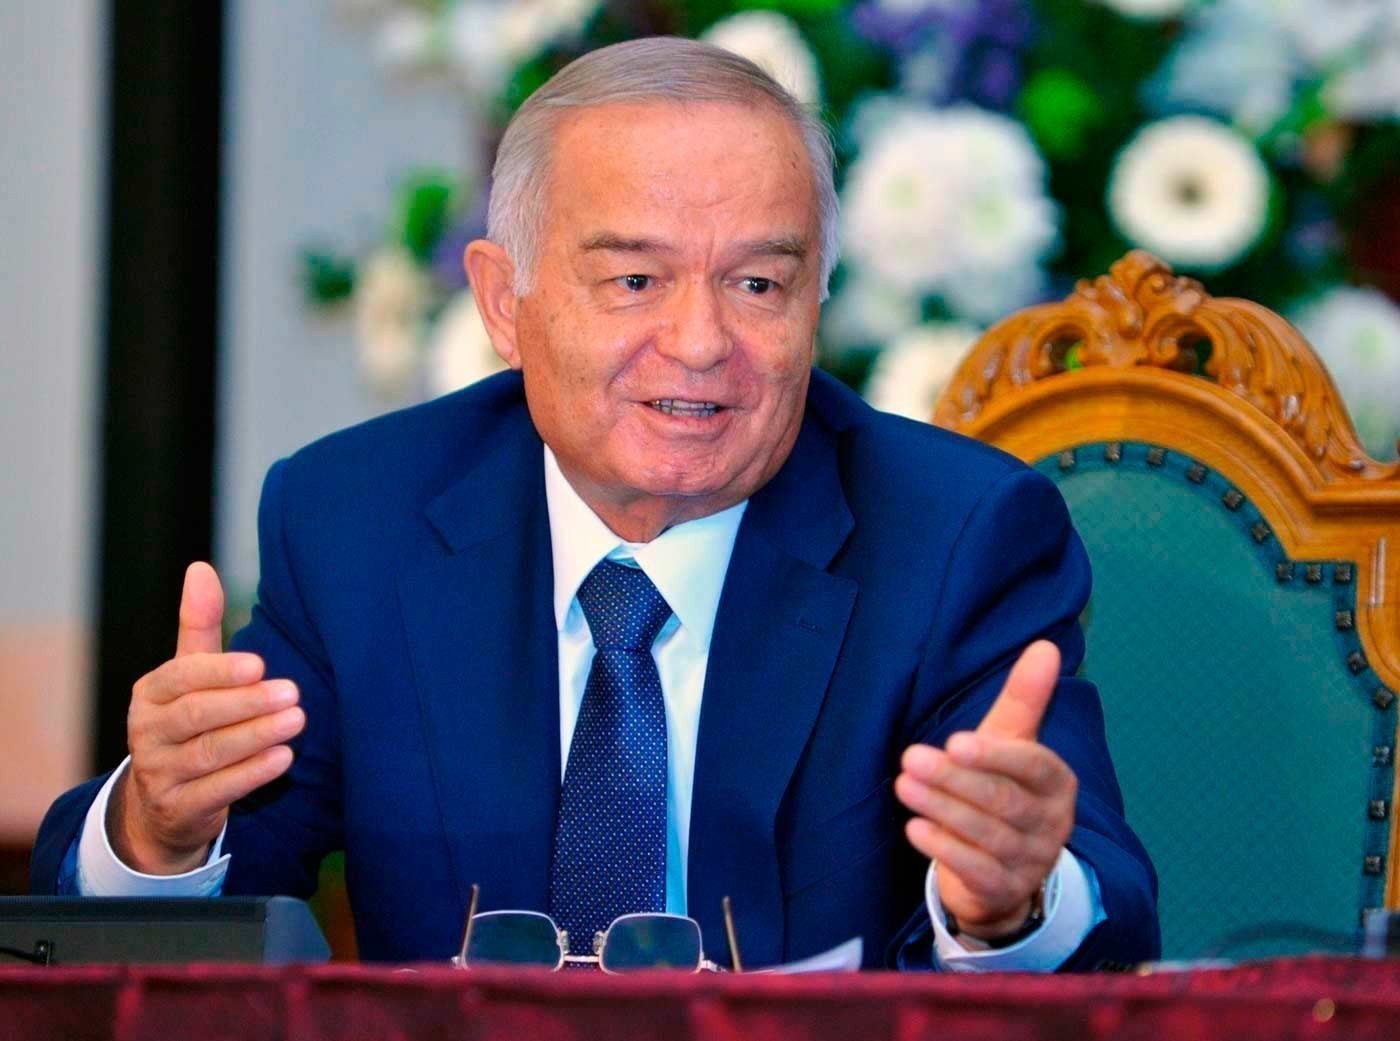 Ислам Каримов вновь выдвинут на пост президента Узбекистана